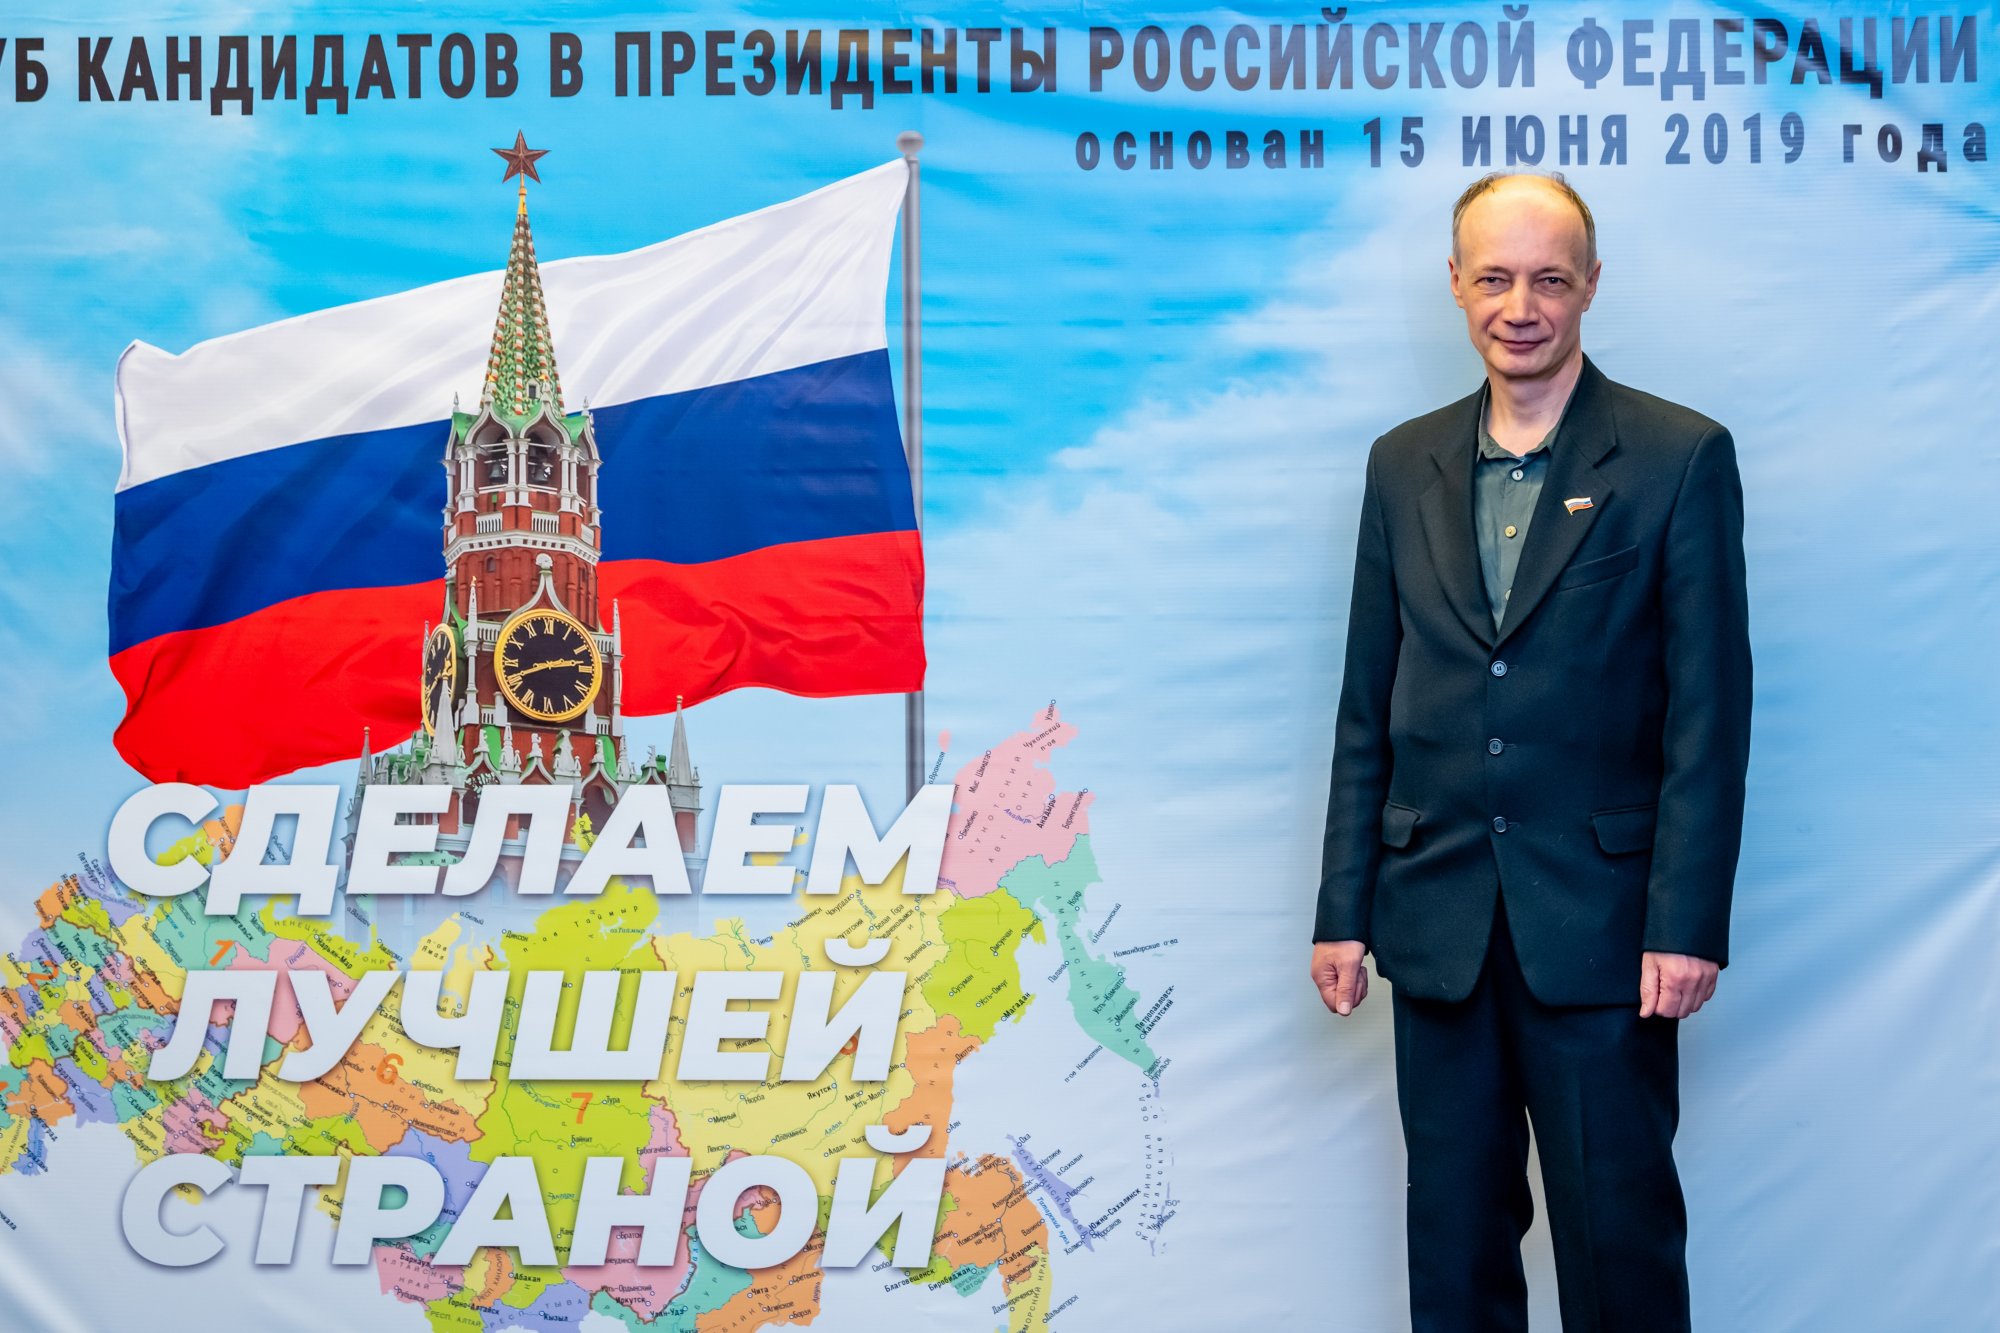 Андрей Кириллов: "Необходимо создать в России лучшие в мире условия для экономического развития"